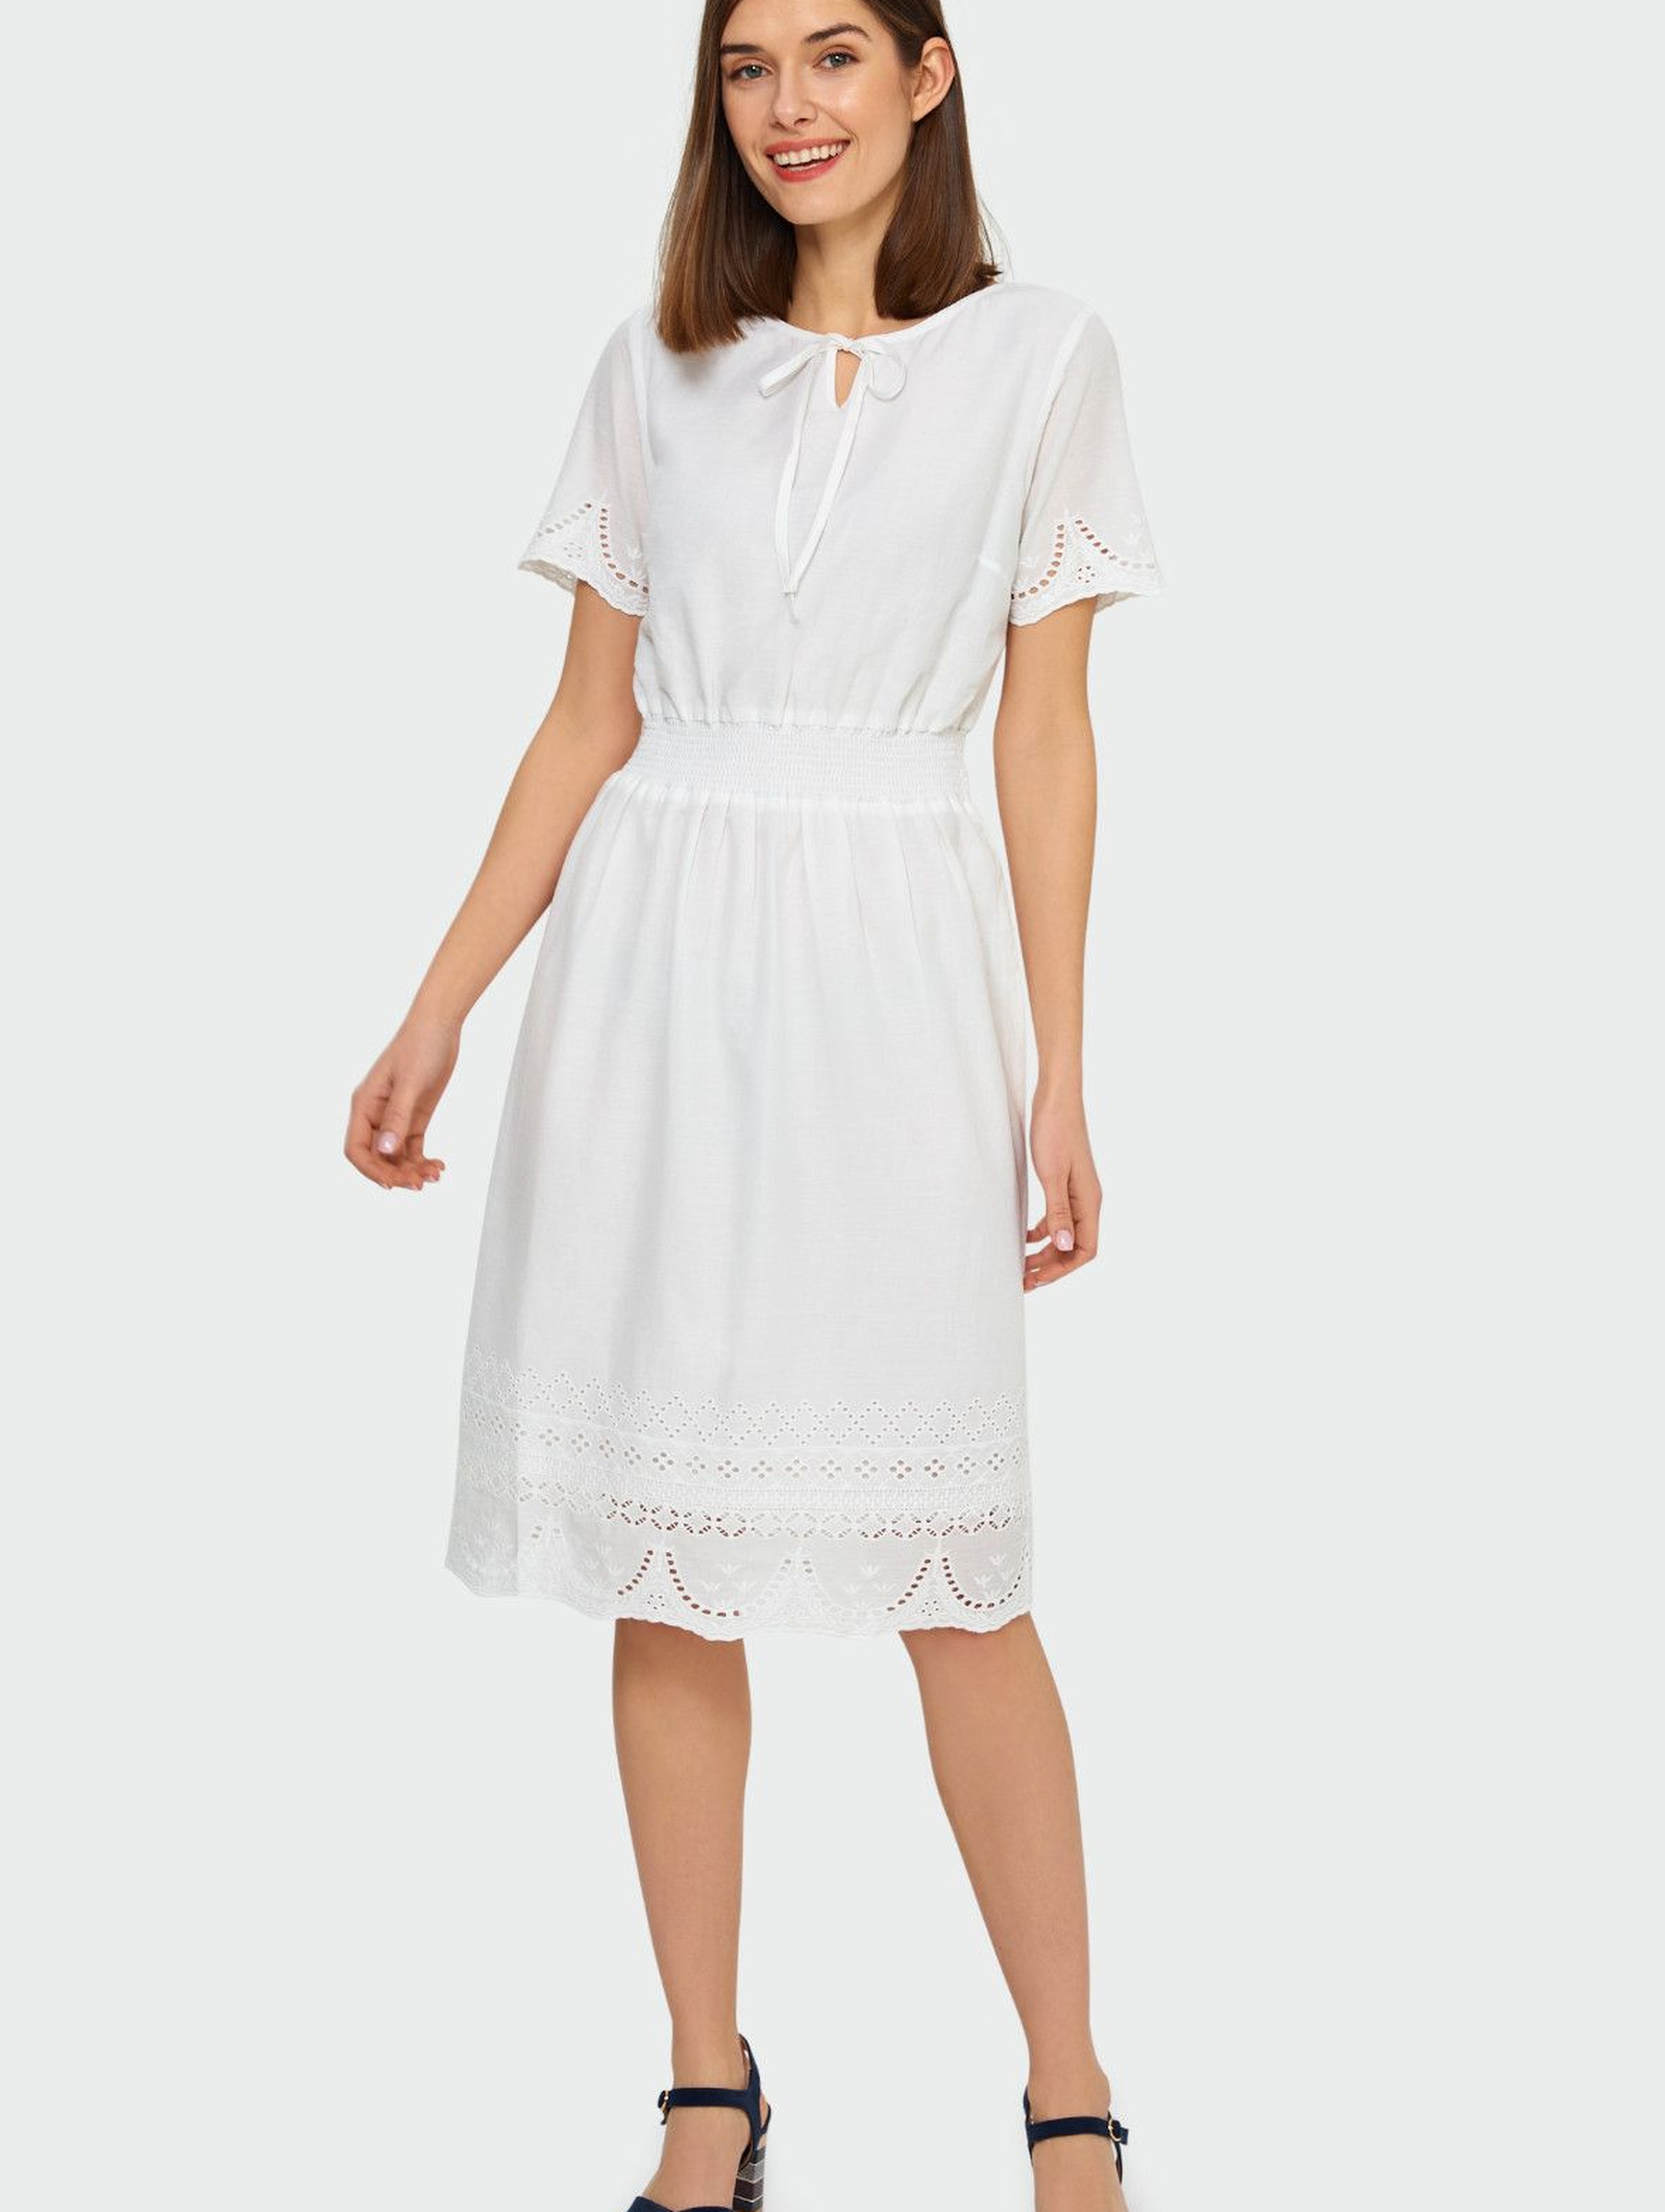 Biała bawełniana haftowana sukienka podkreślająca talię